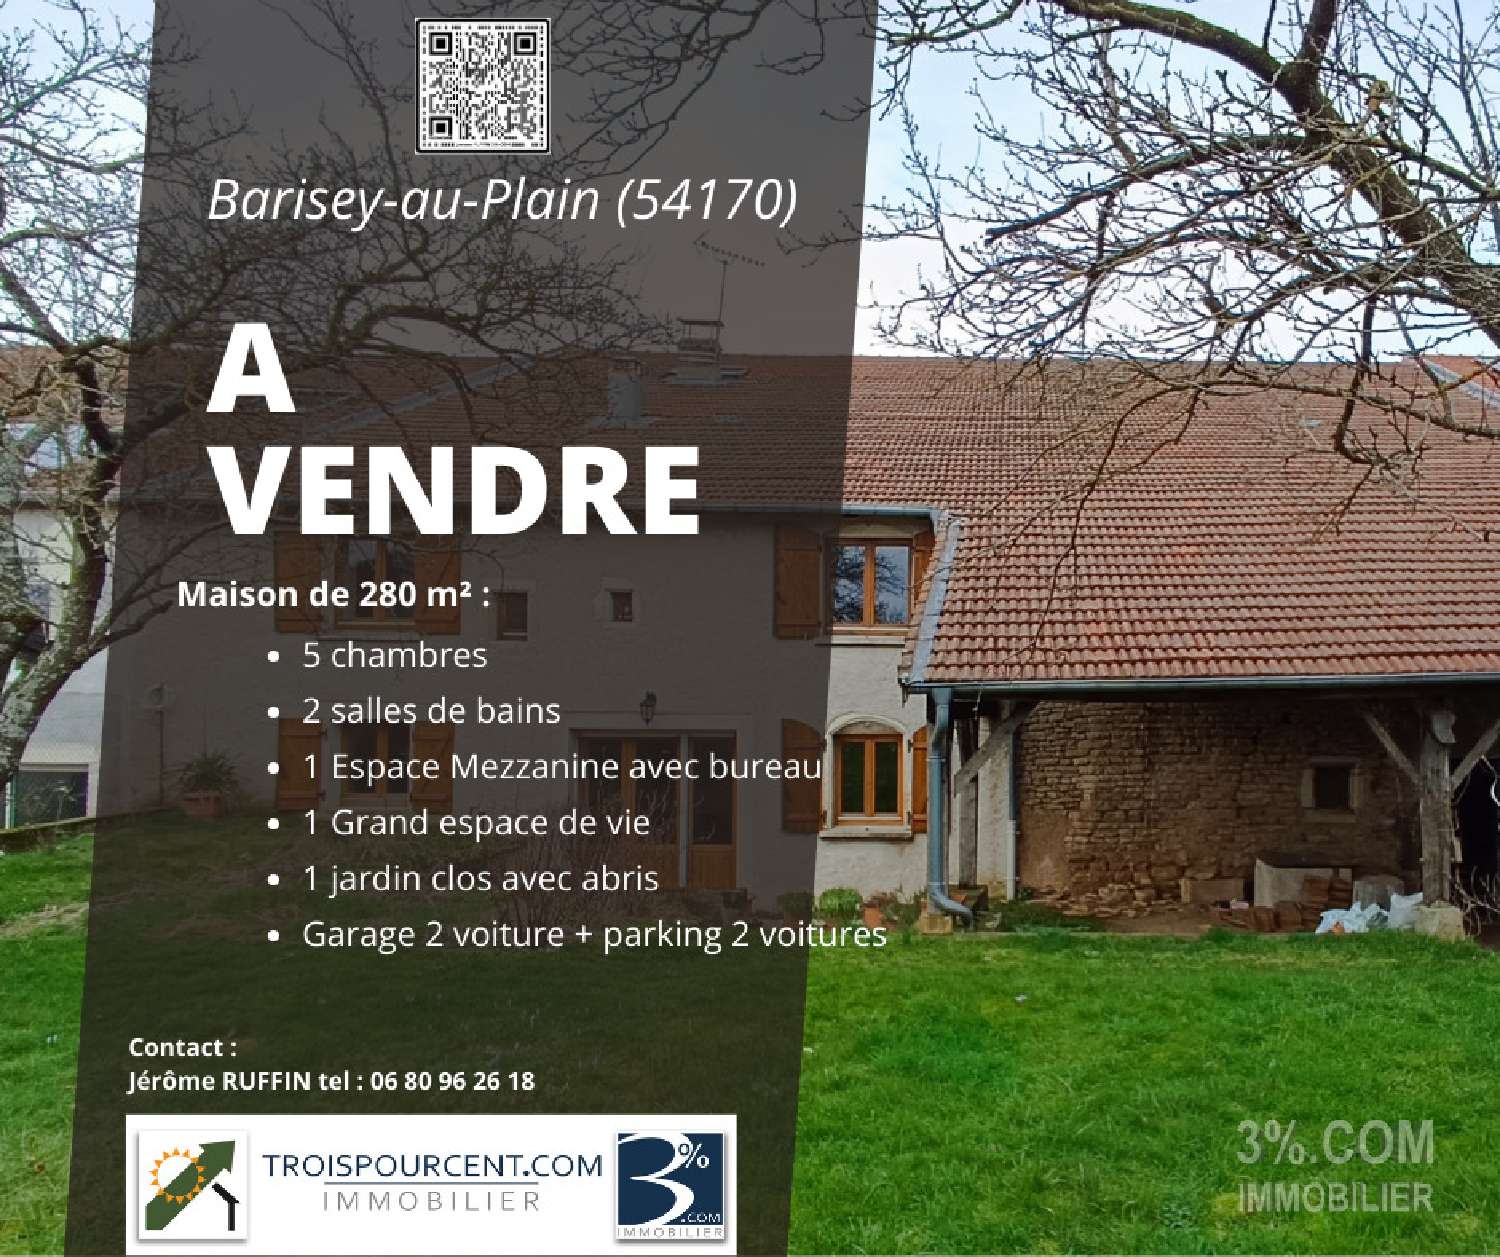  for sale estate Barisey-au-Plain Meurthe-et-Moselle 1